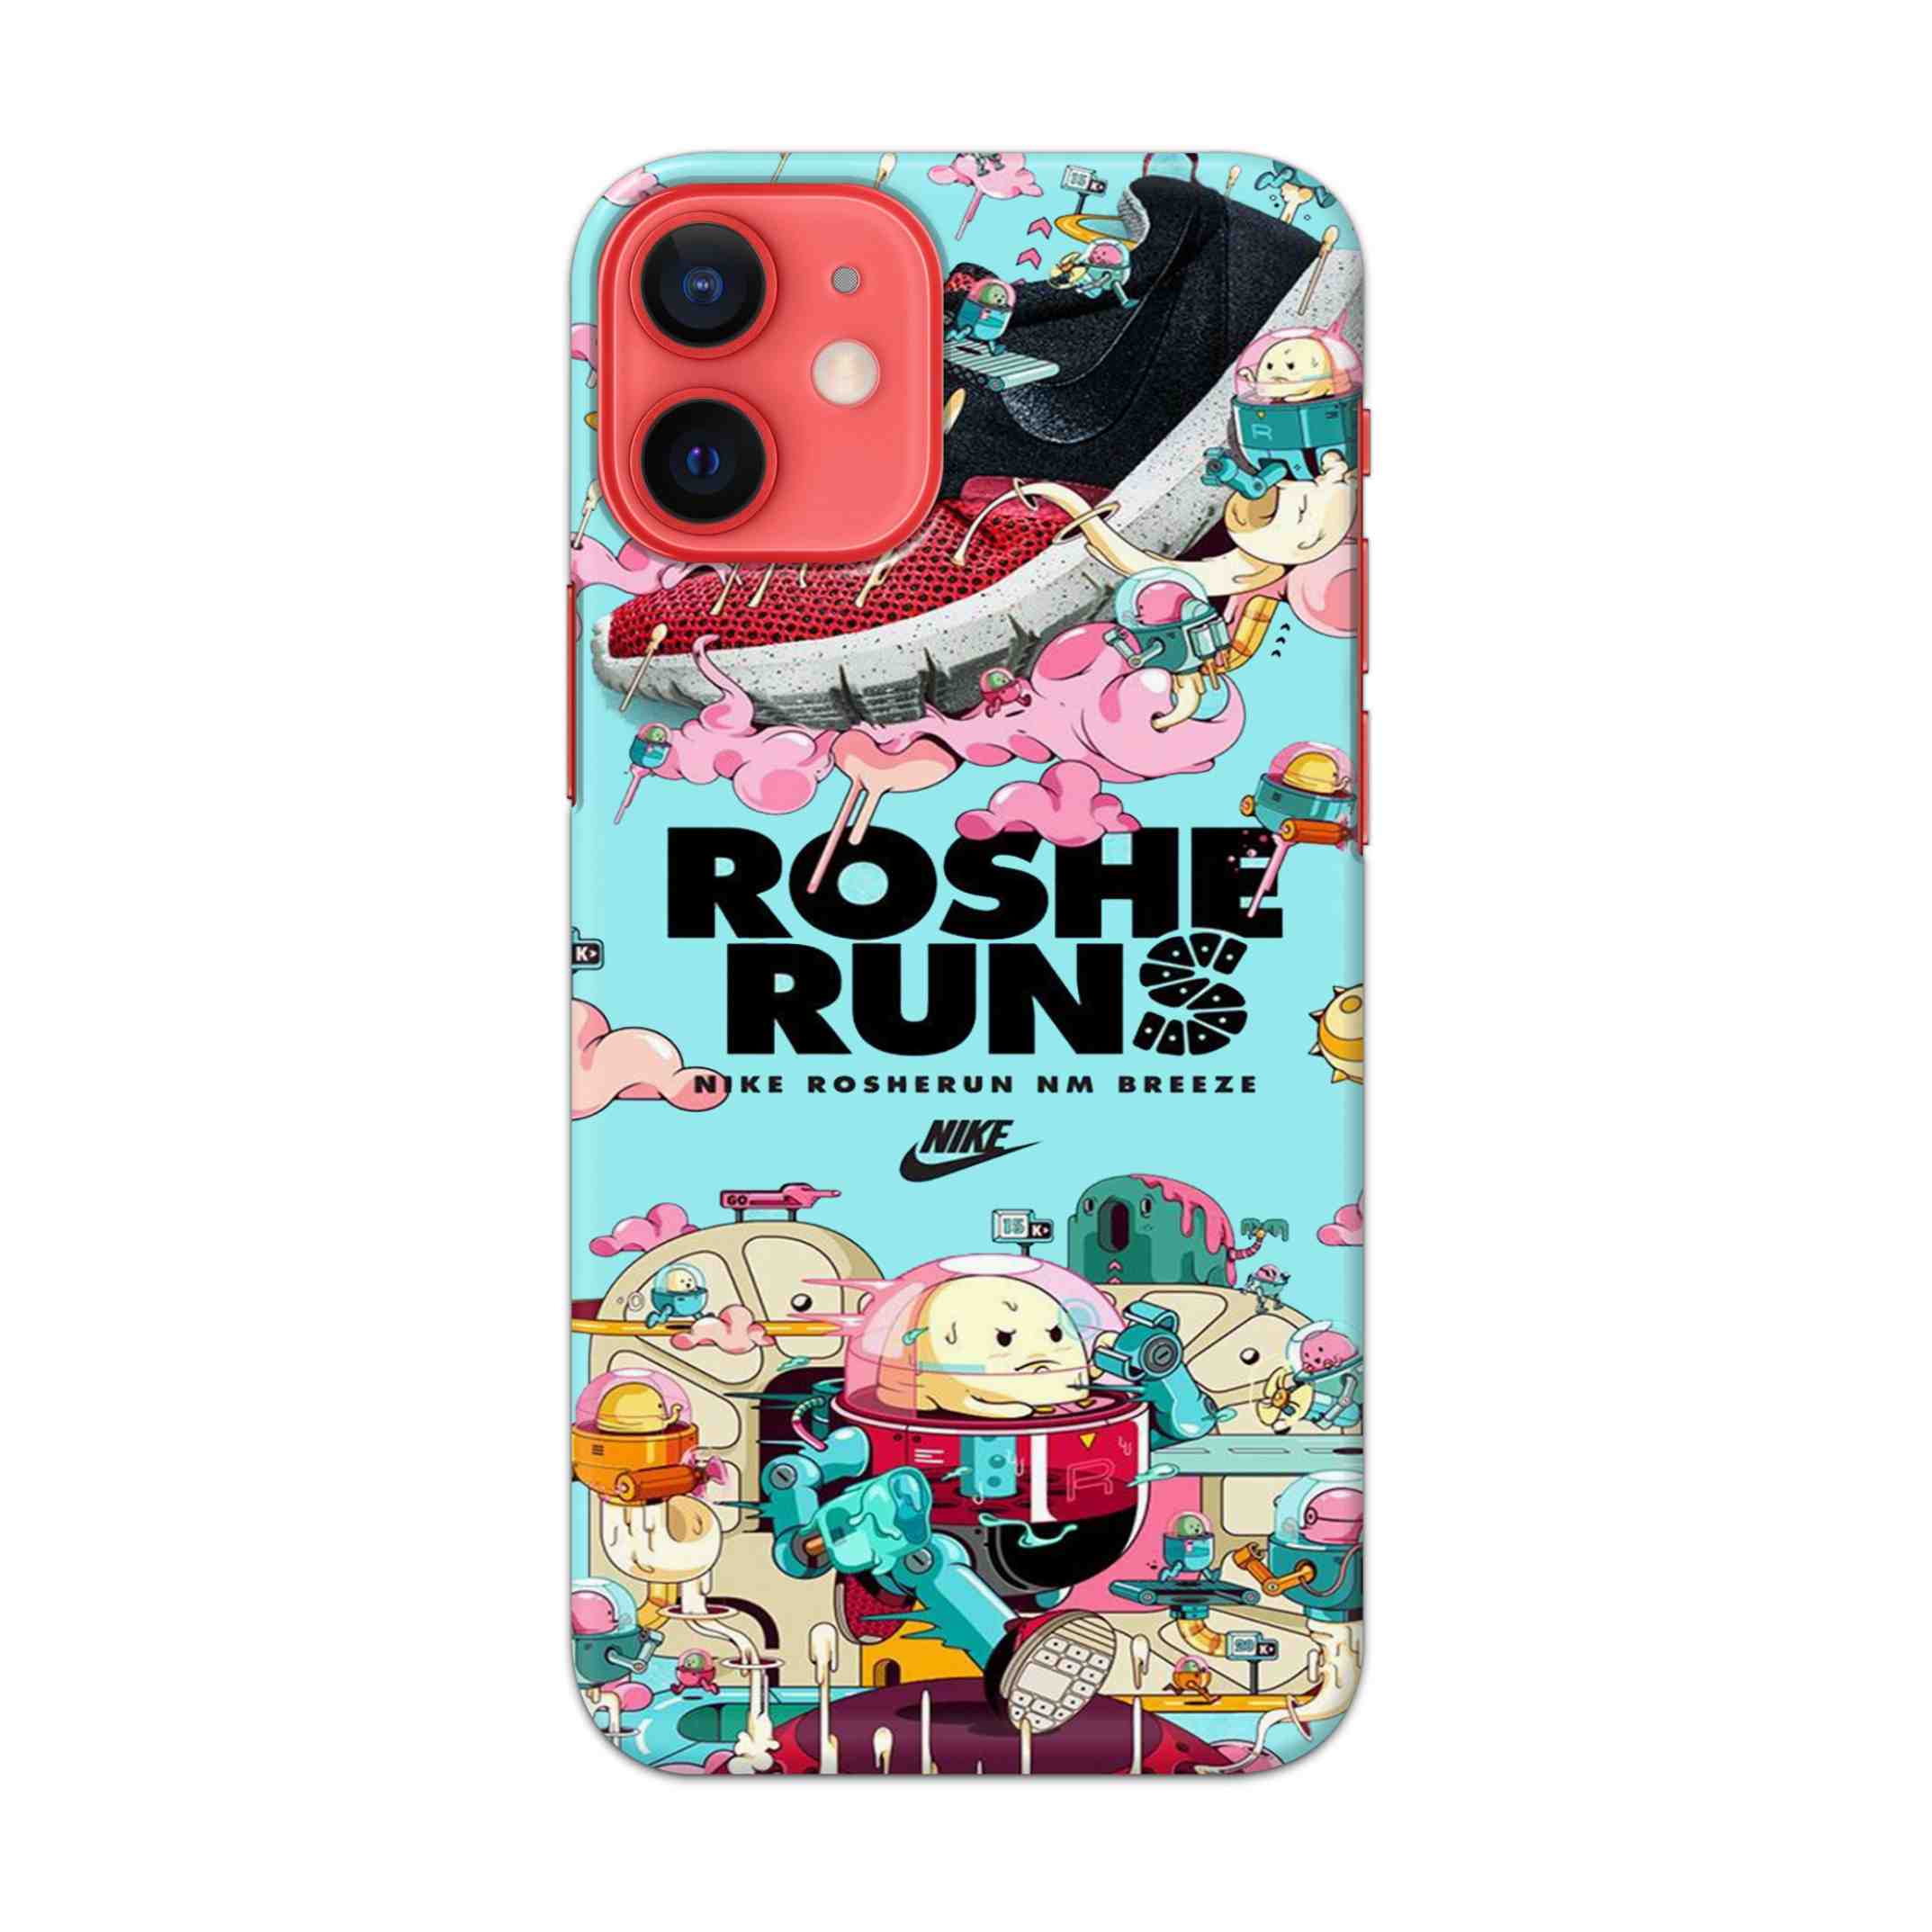 Buy Roshe Runs Hard Back Mobile Phone Case/Cover For Apple iPhone 12 mini Online